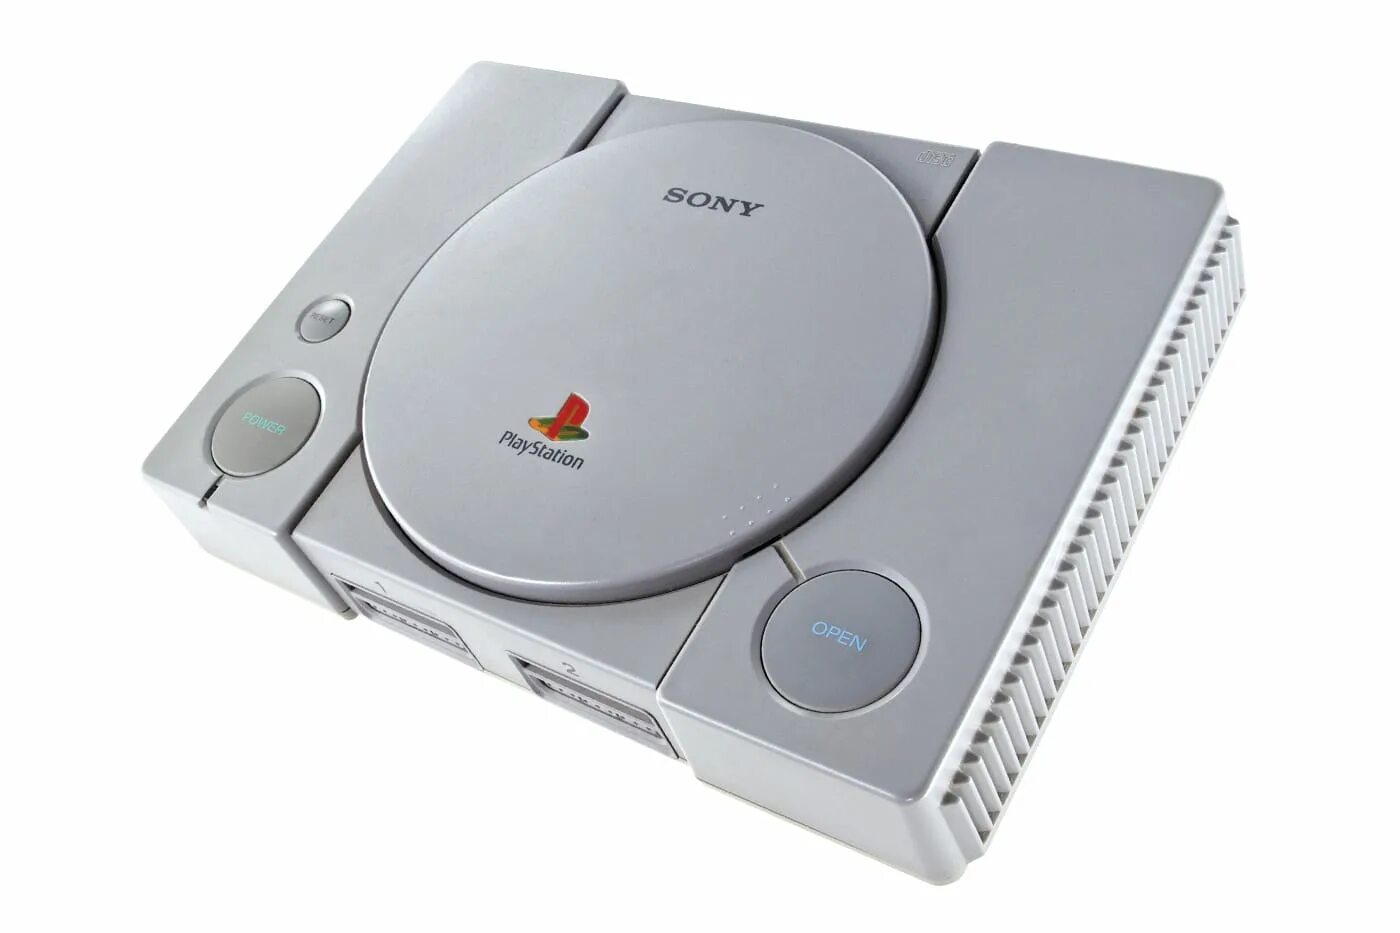 Playstation ps1. Sony PLAYSTATION 1. Sony PLAYSTATION 1 Slim. Sony ps1. Сони плейстейшен 1 Япония.